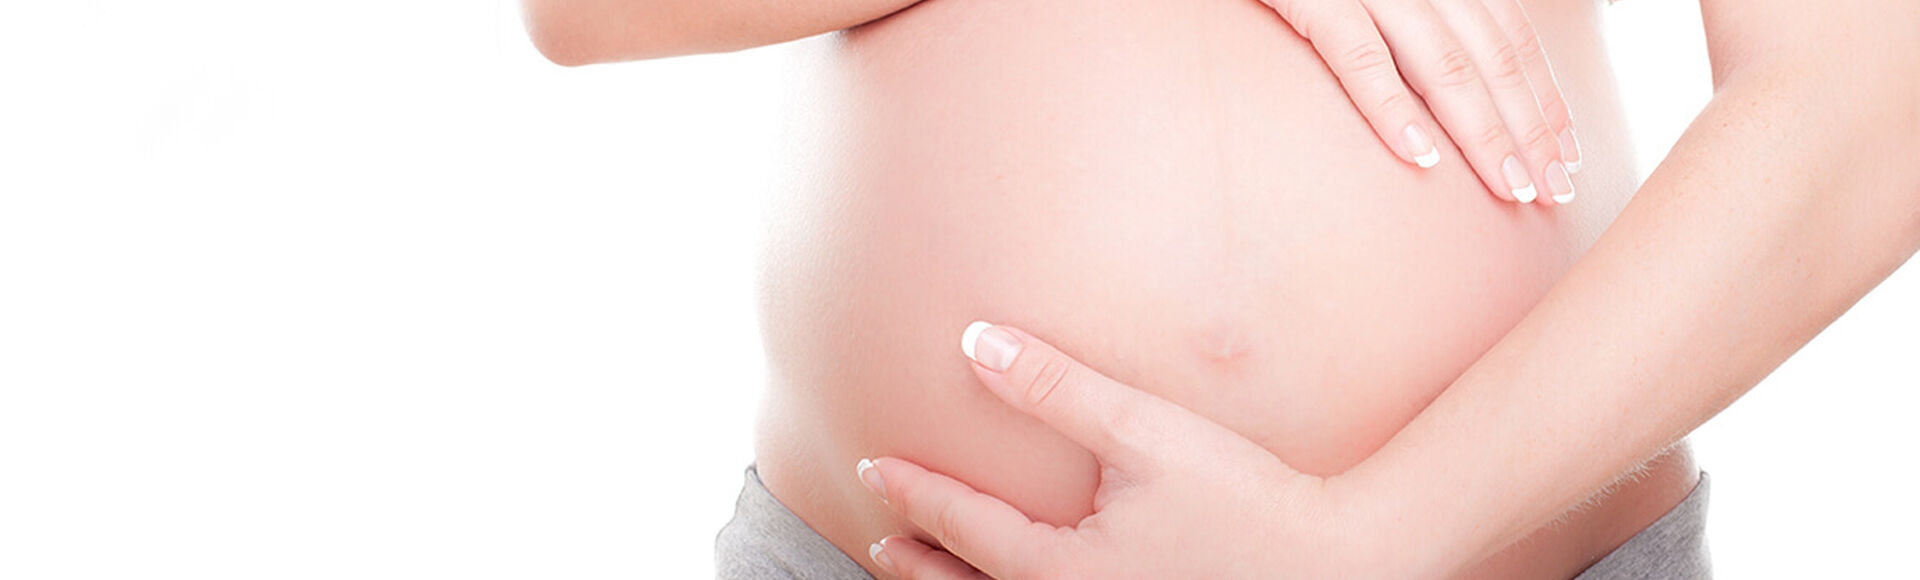 embarazo de 40 semanas y sin contracciones | by Huggies Argentina